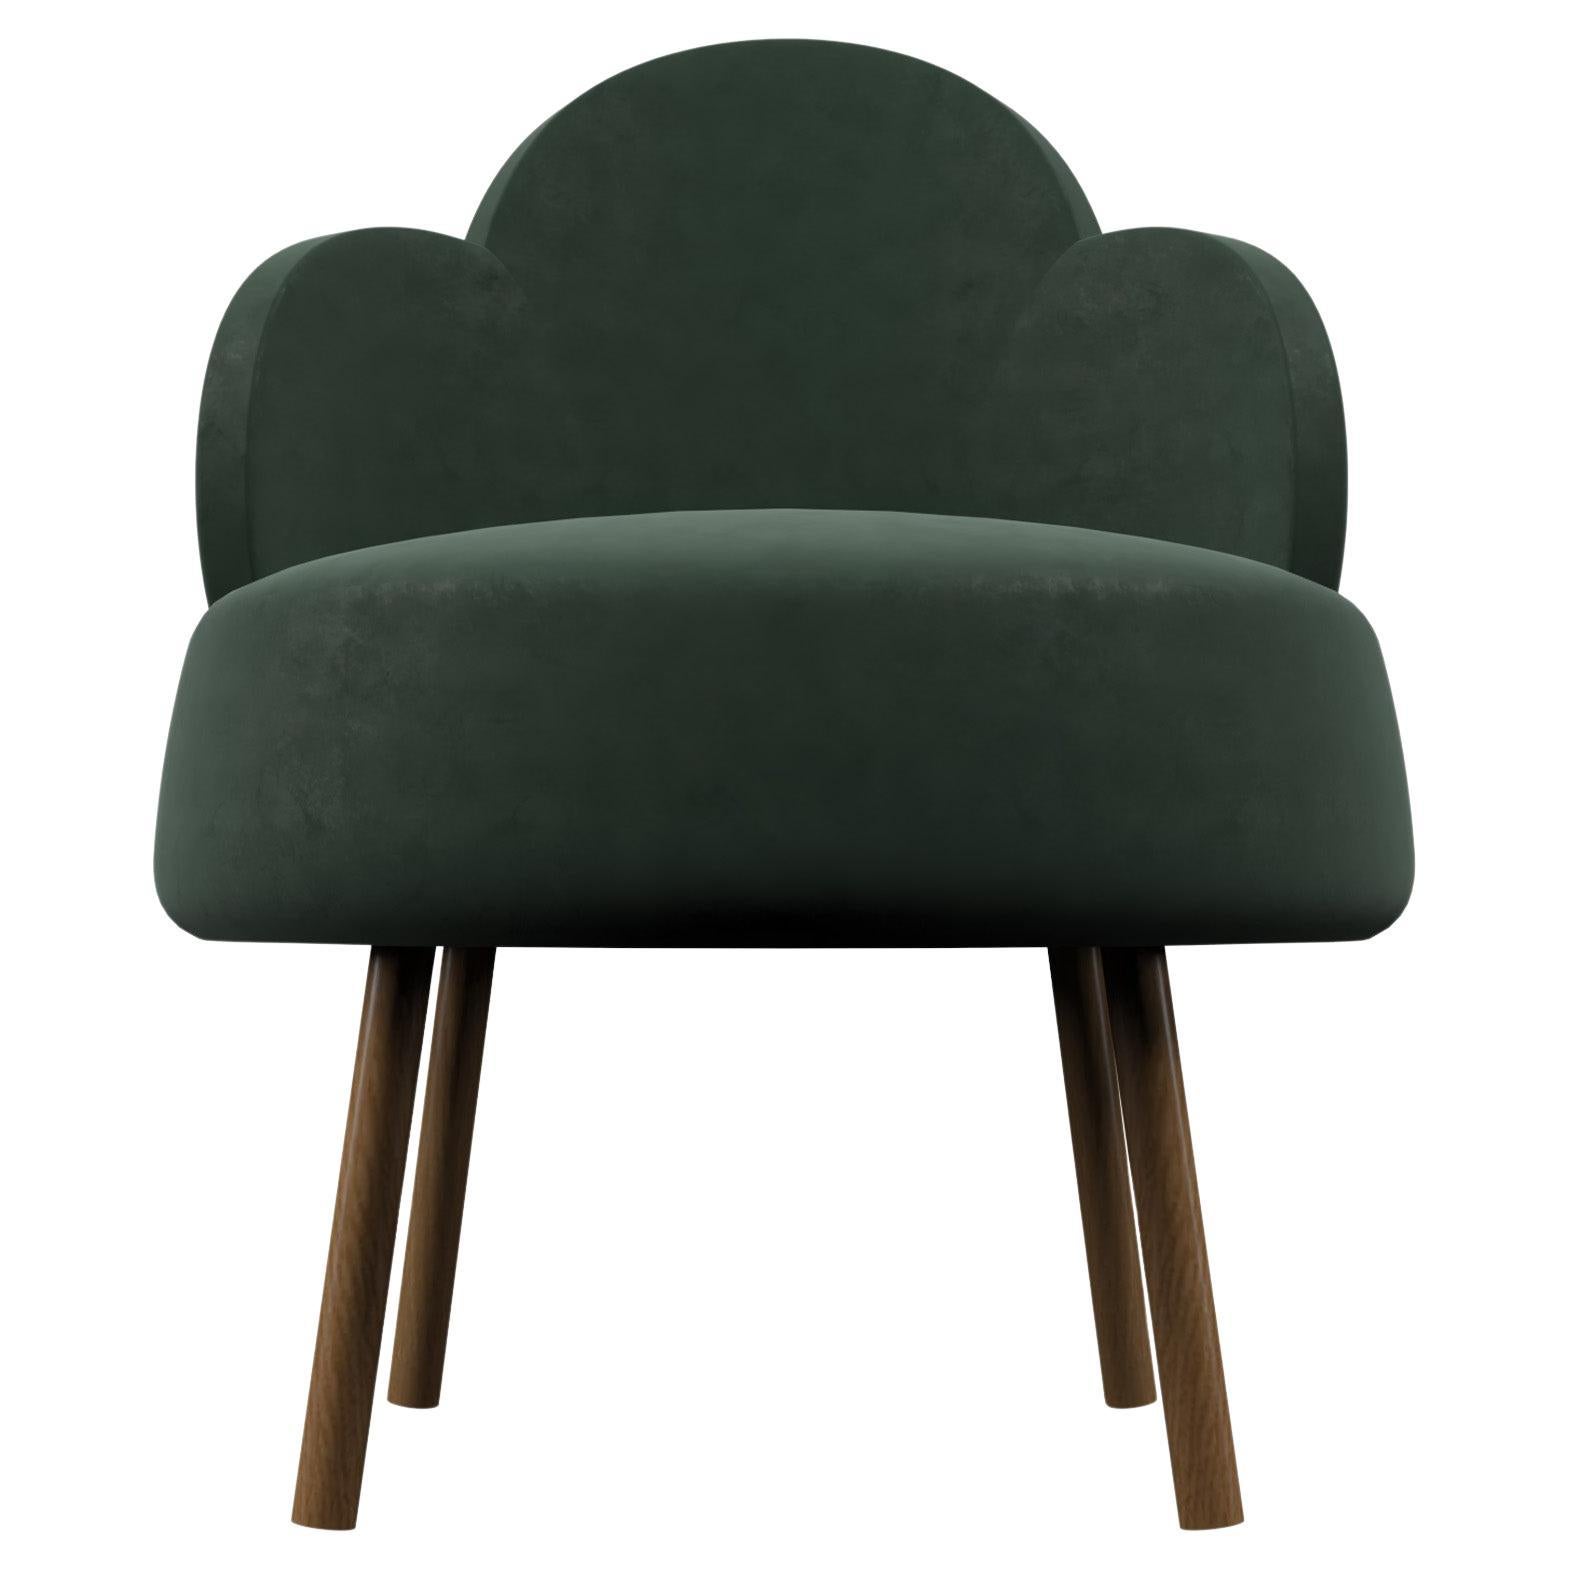 VANCOUVERT Velvet Chair in Olive by Alexandre Ligios, REP by Tuleste Factory